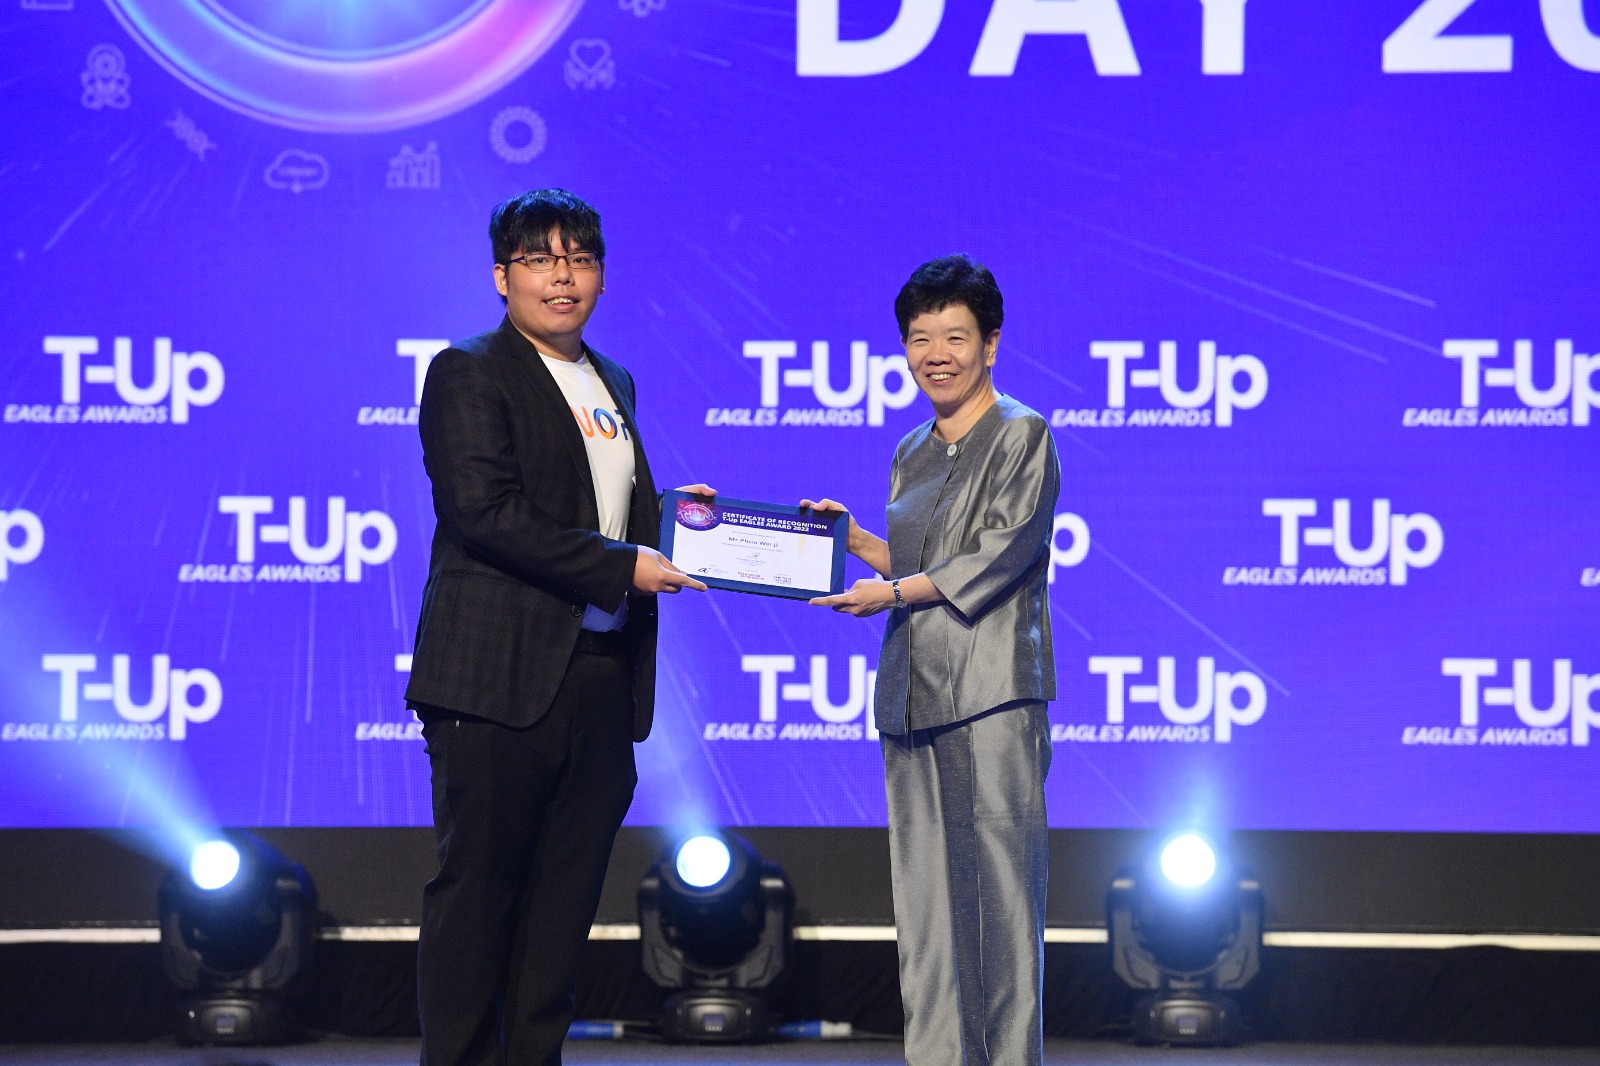 Wei Ji receiving award from Ms Chan Lai Fung, perm sec, National Research & Development